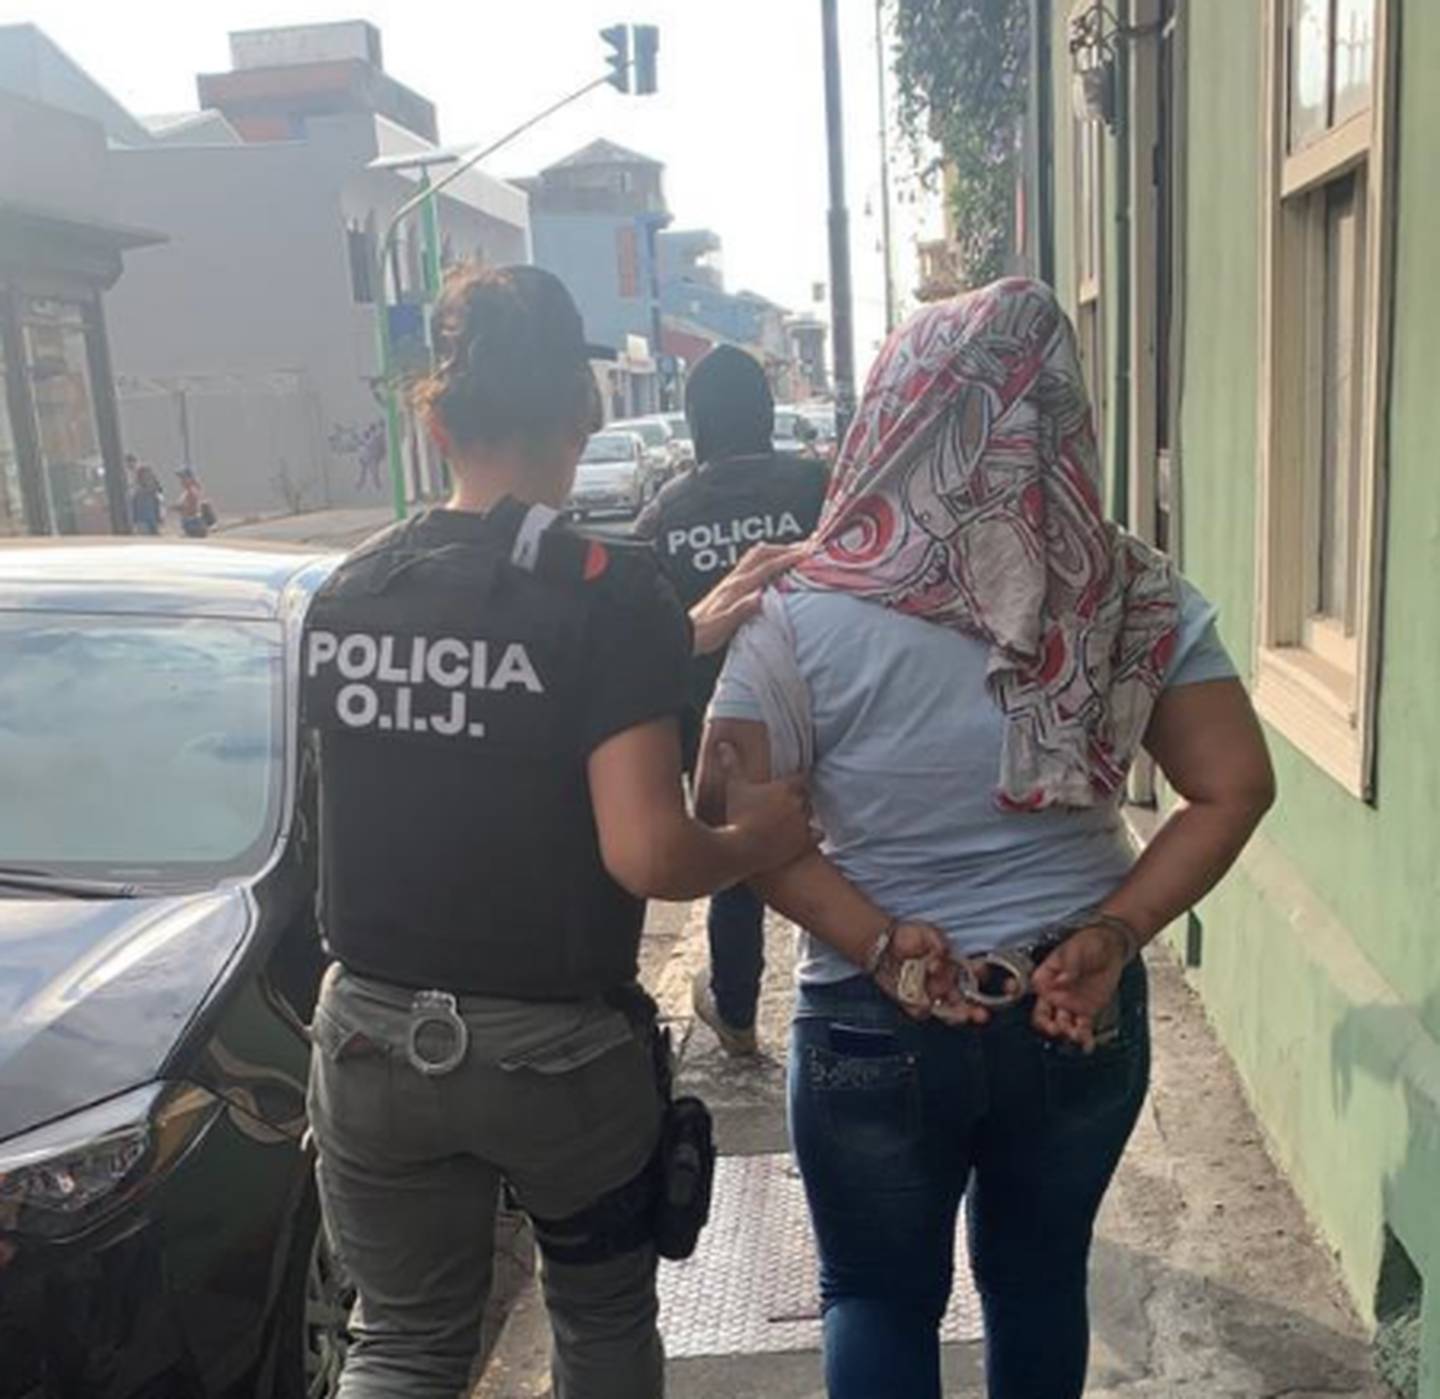 El uso de pensiones josefinas para ofrecer servicios sexuales está en la mira del OIJ. Una mujer fue detenida en avenida 7 de San José. Foto: Cortesía OIJ.